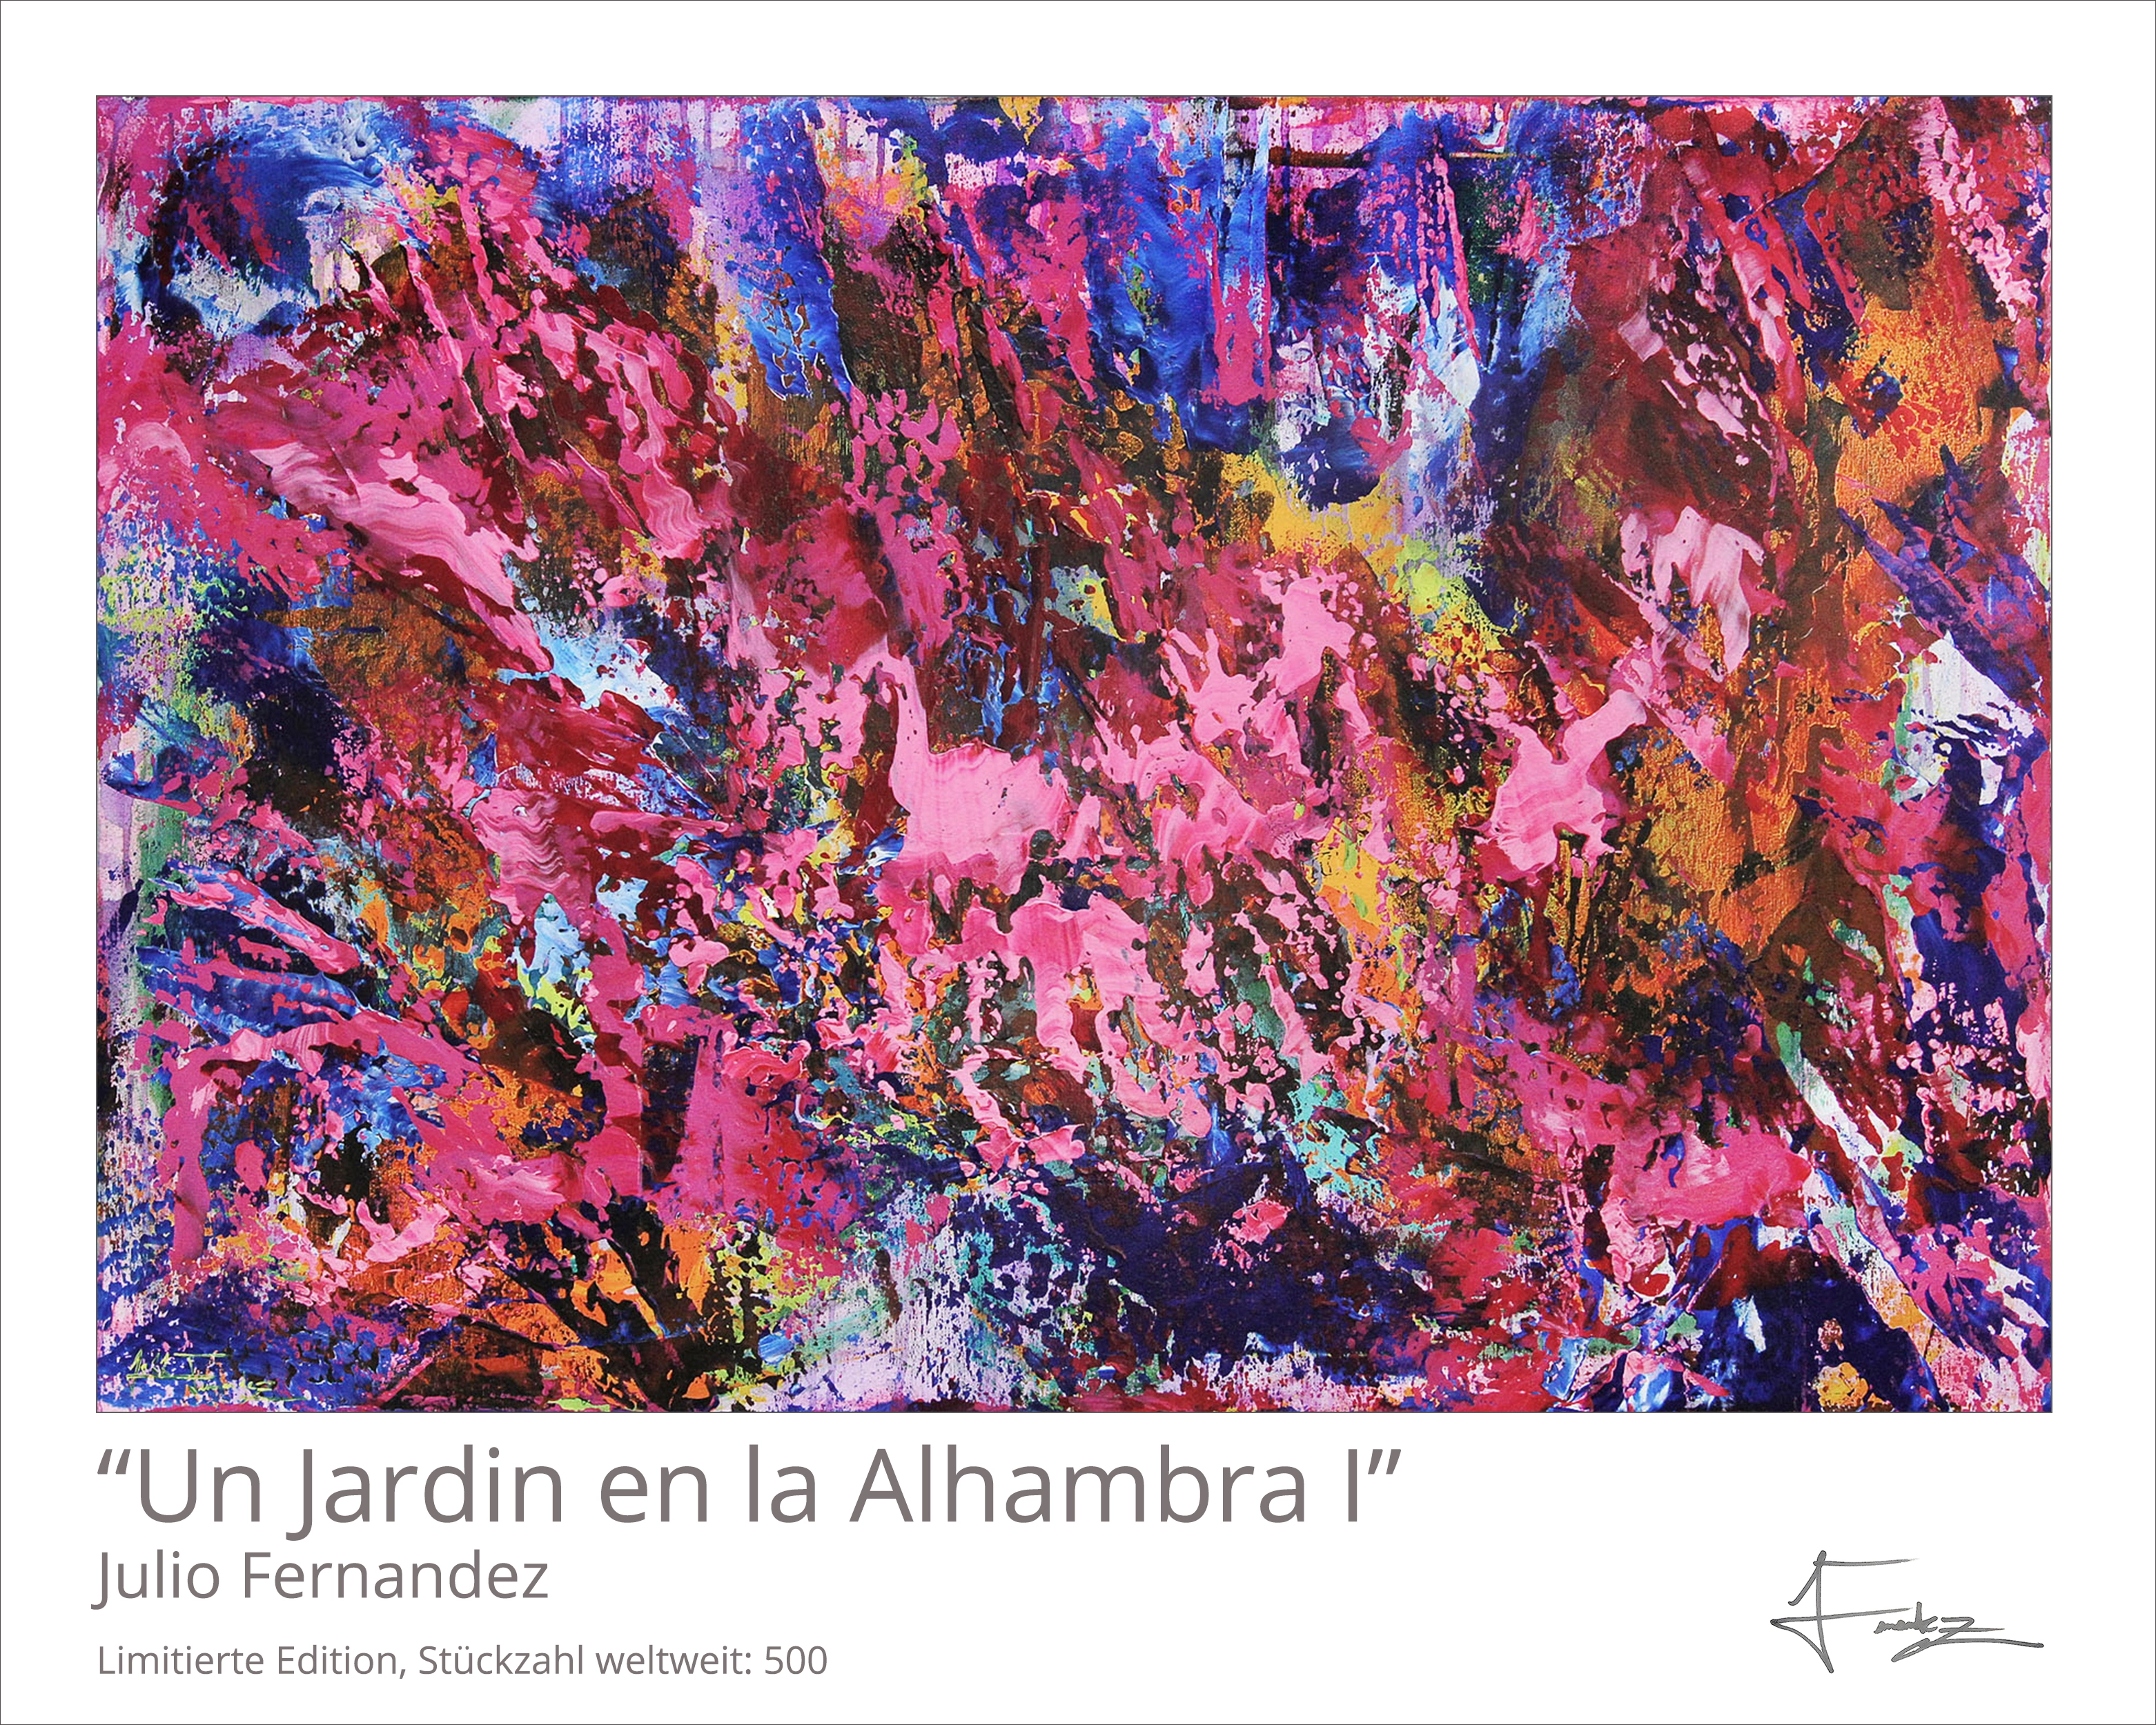 Limitierte Edition auf Papier, J. Fernandez "Un Jardin en la Alhambra I", Fineartprint, Kollektion E&K